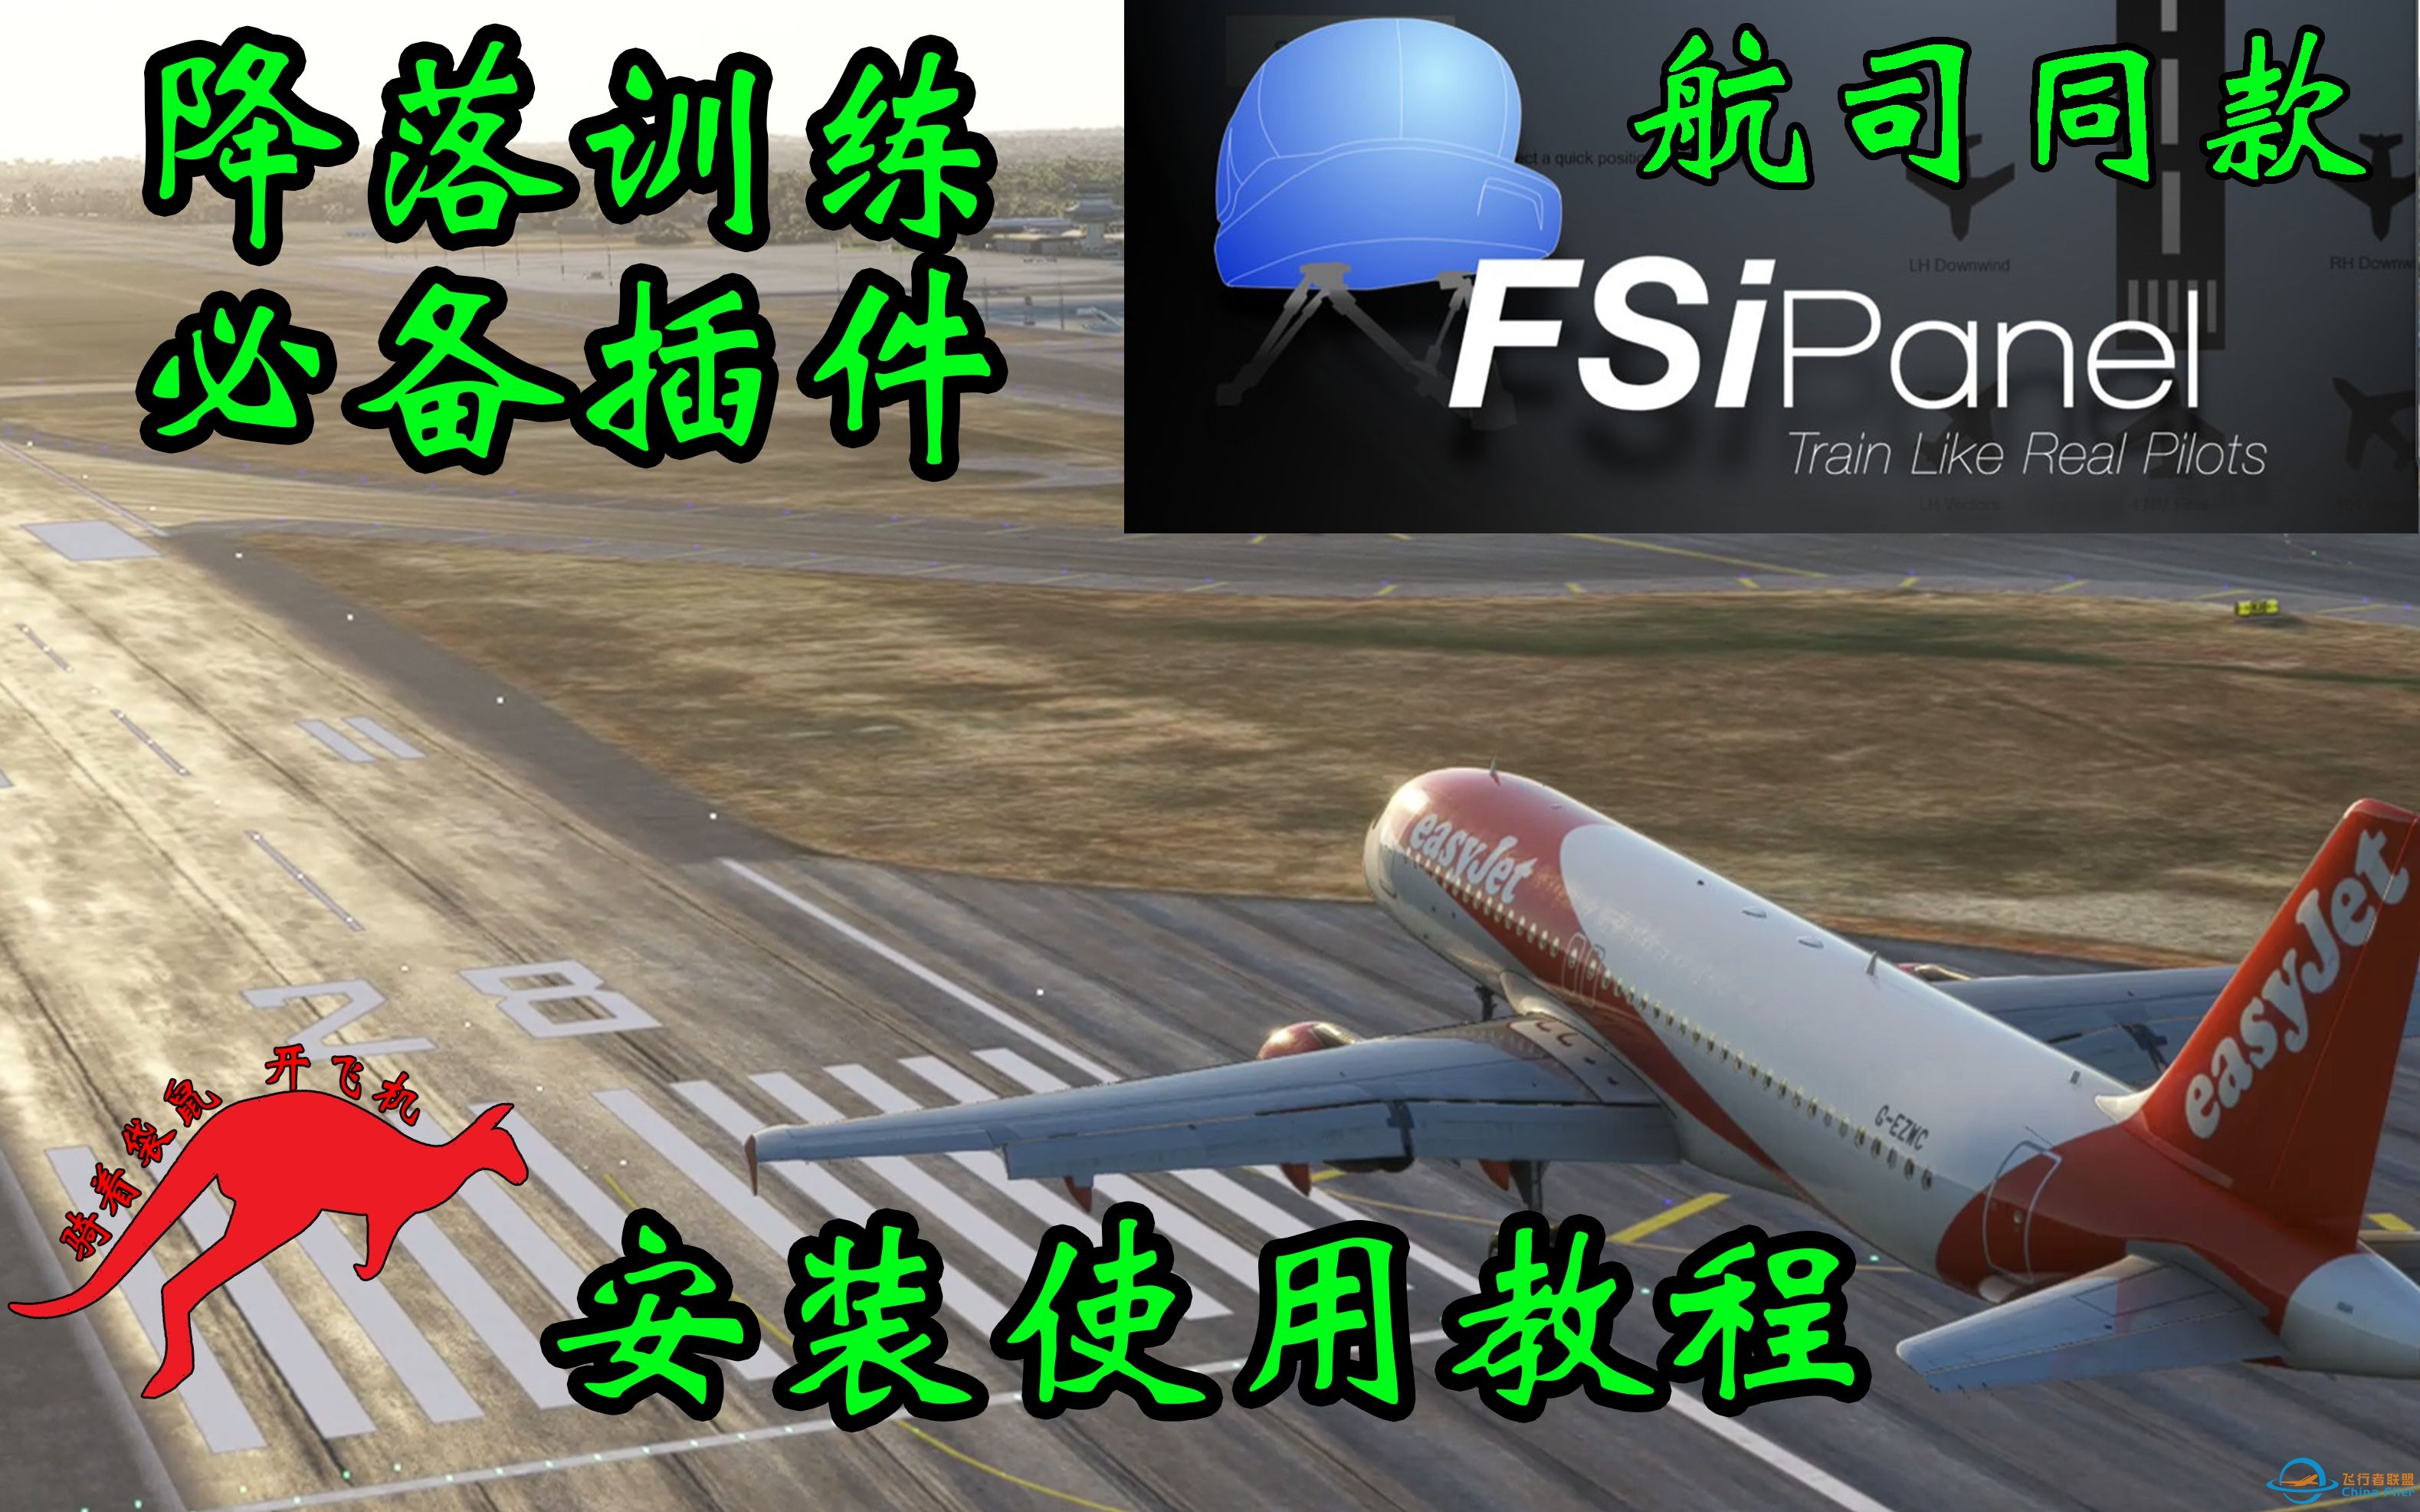 【微软飞行模拟】降落训练必备插件 FSiPanel航司复训同款 使用购买教程-5116 